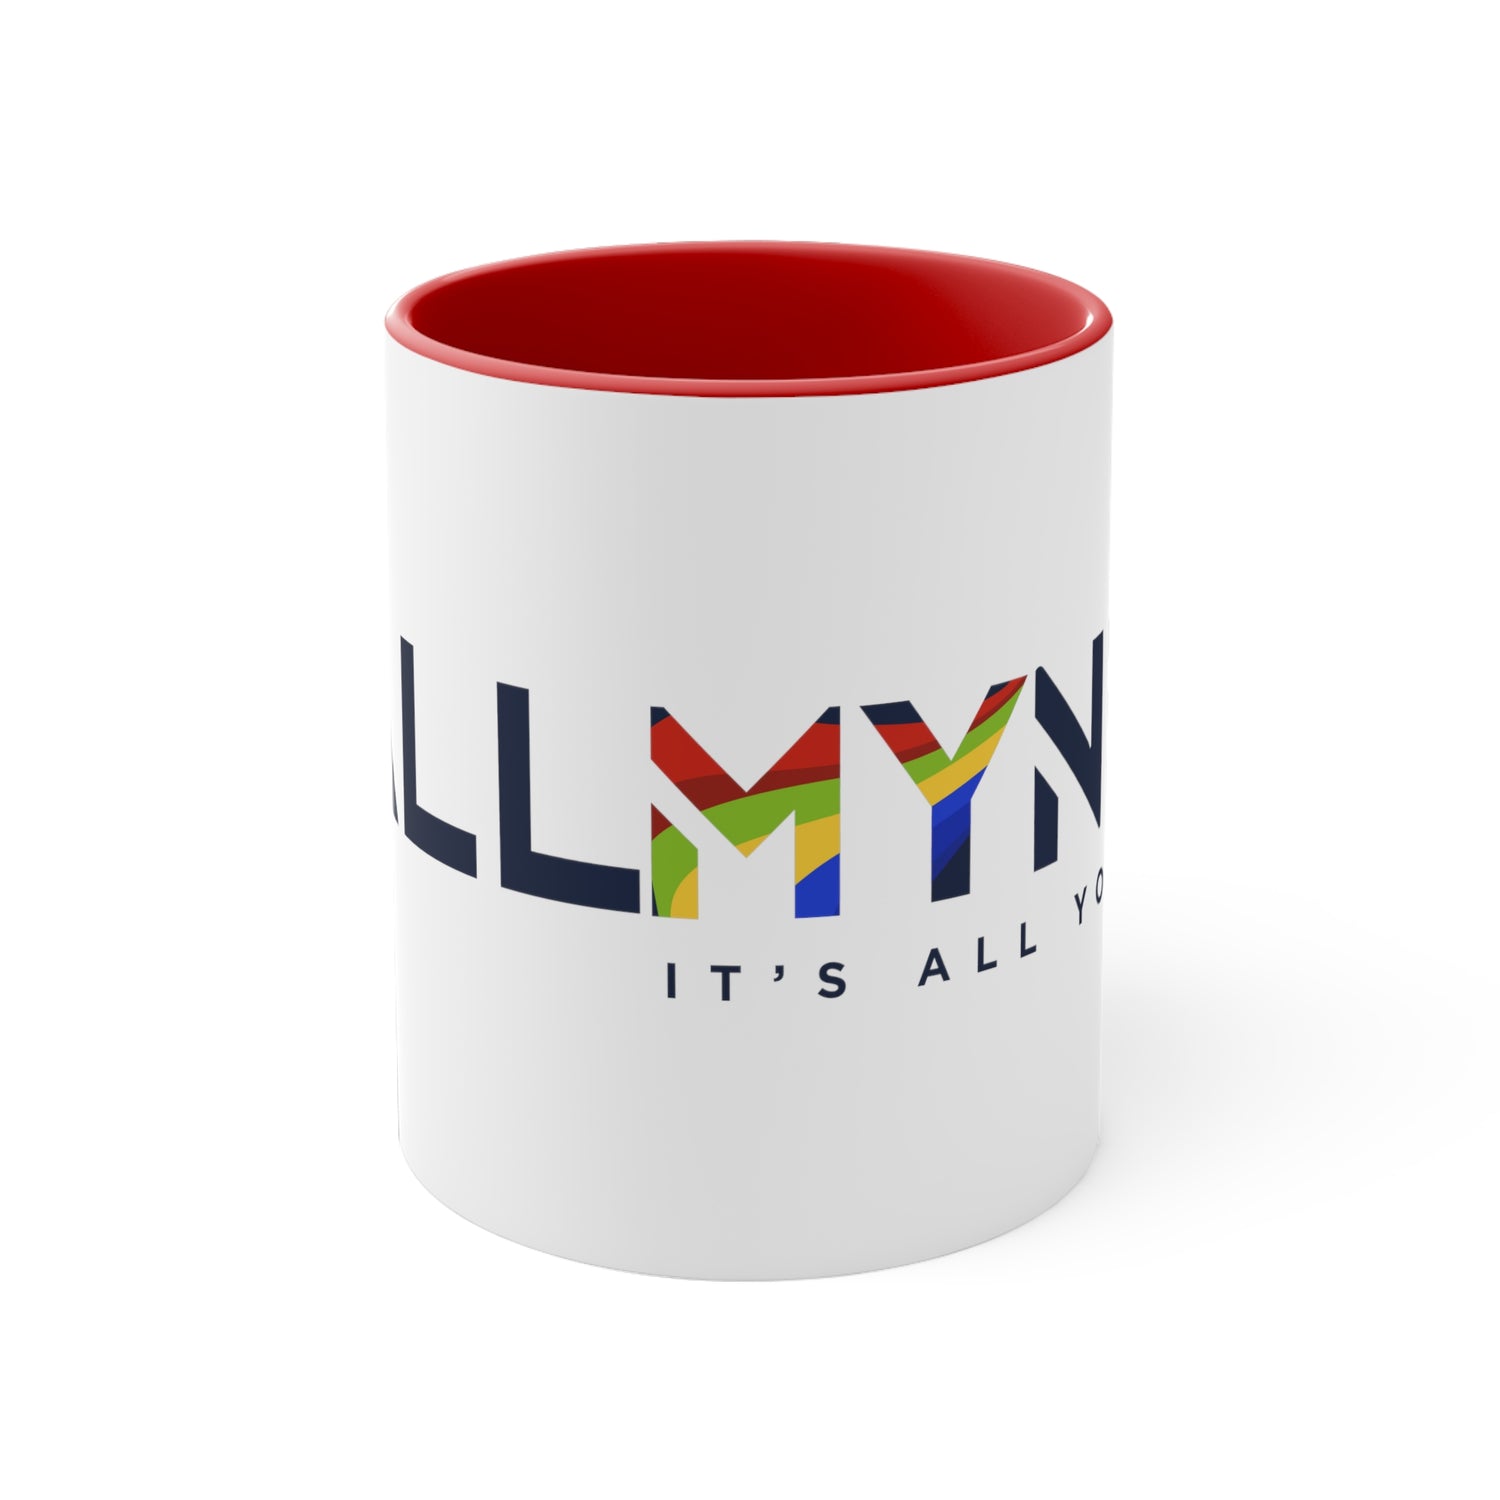 ALLMYNE Accent Coffee Mug, 11oz